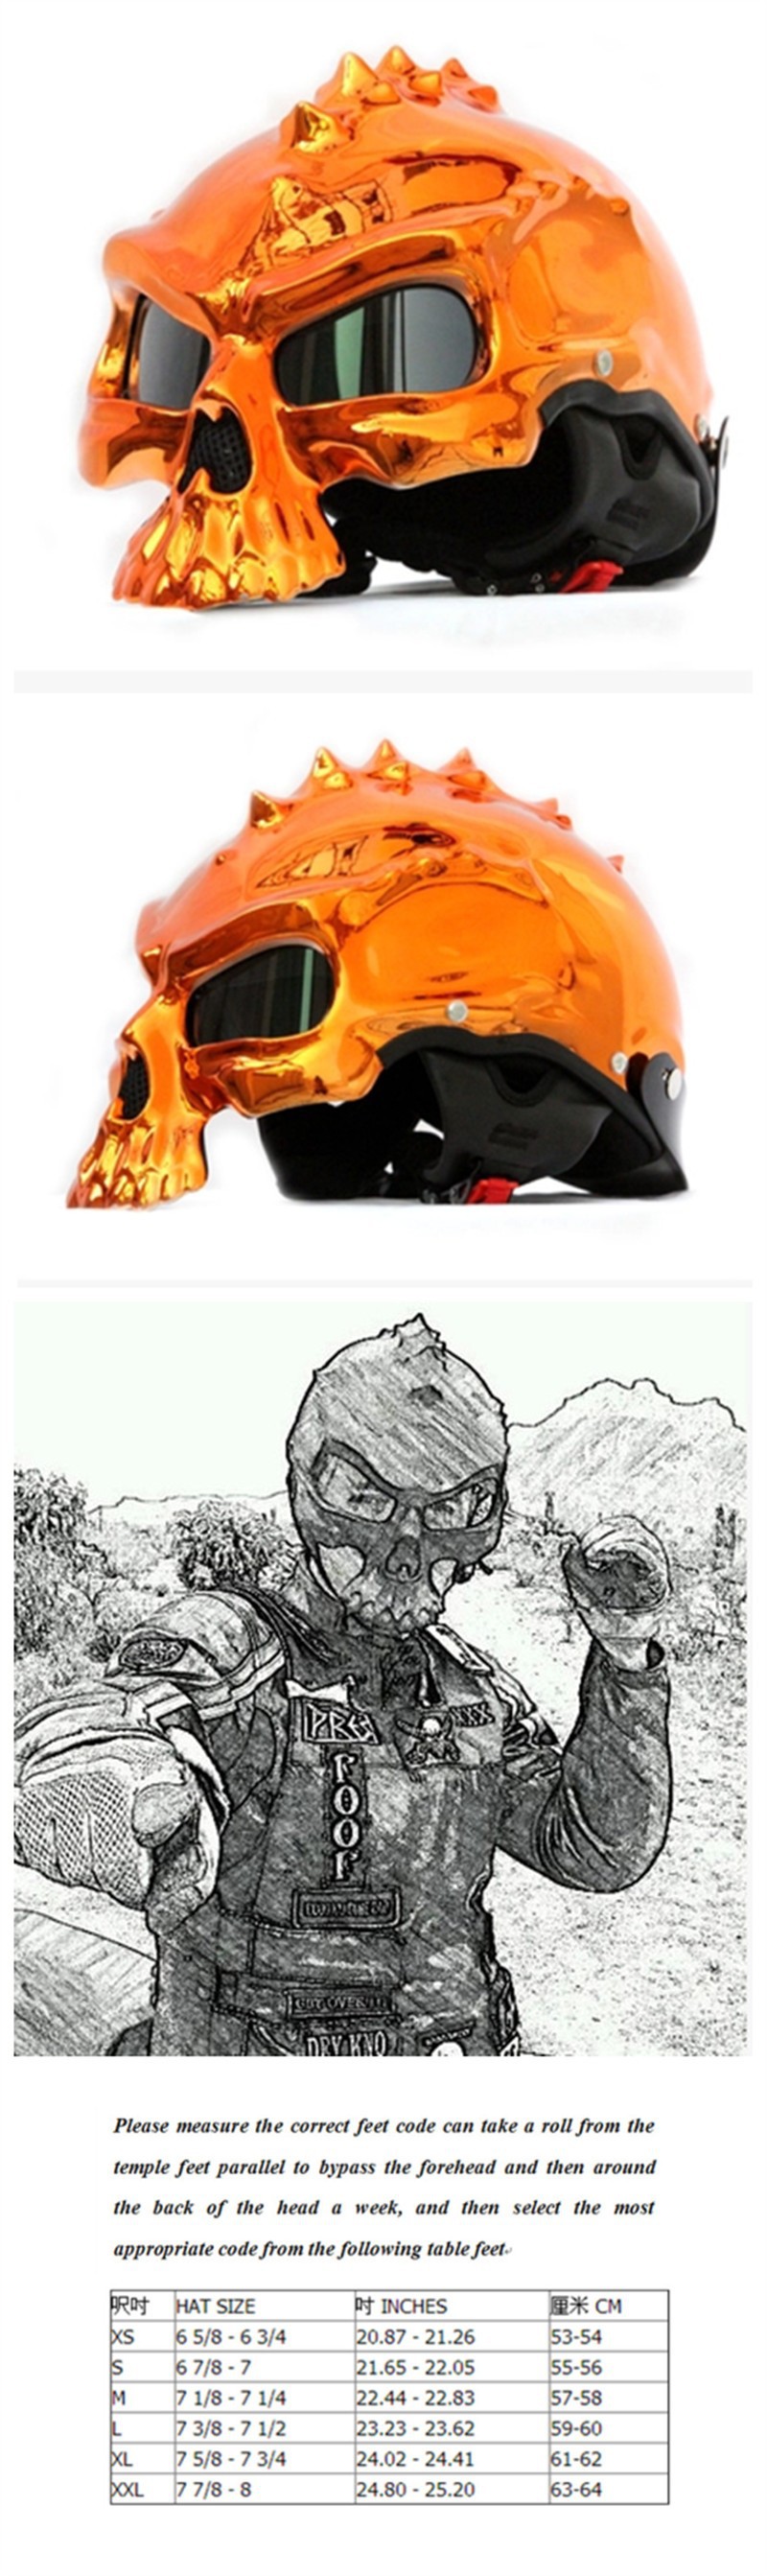 HT03OGB Standard Skull Helmet Harley Motorcycle Half Helmet Plating orange